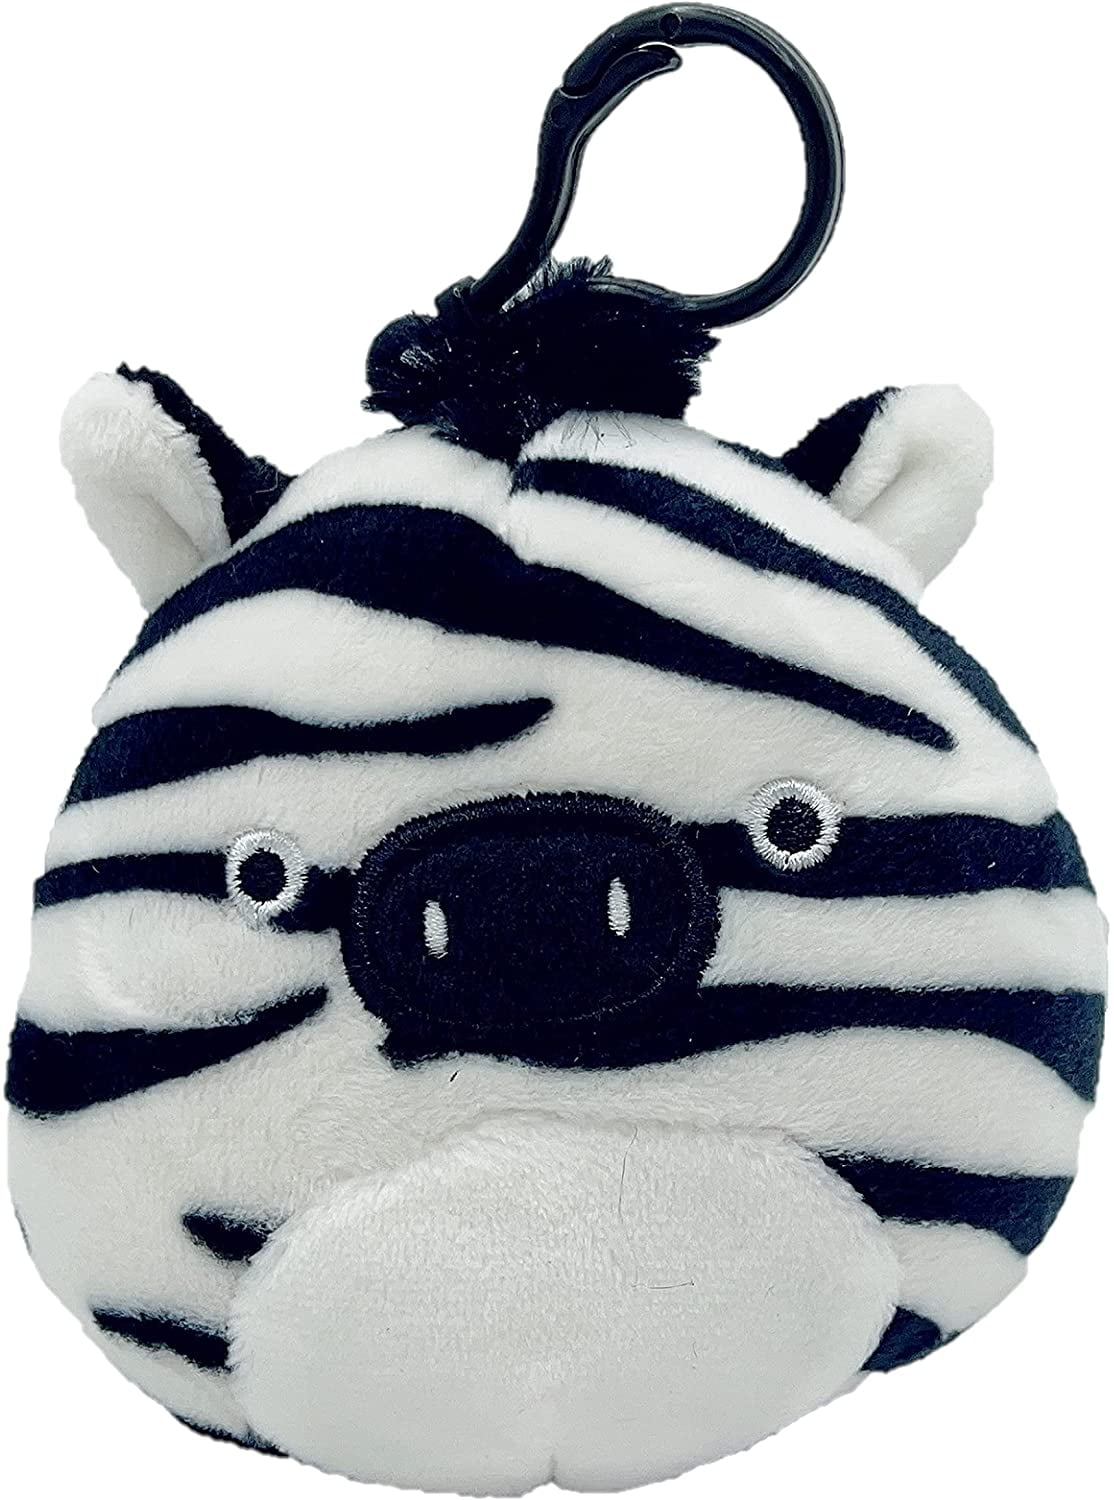 Squishmallow Kellytoy Freddie The Zebra 16”Plush Doll Toy Pillow Pet 